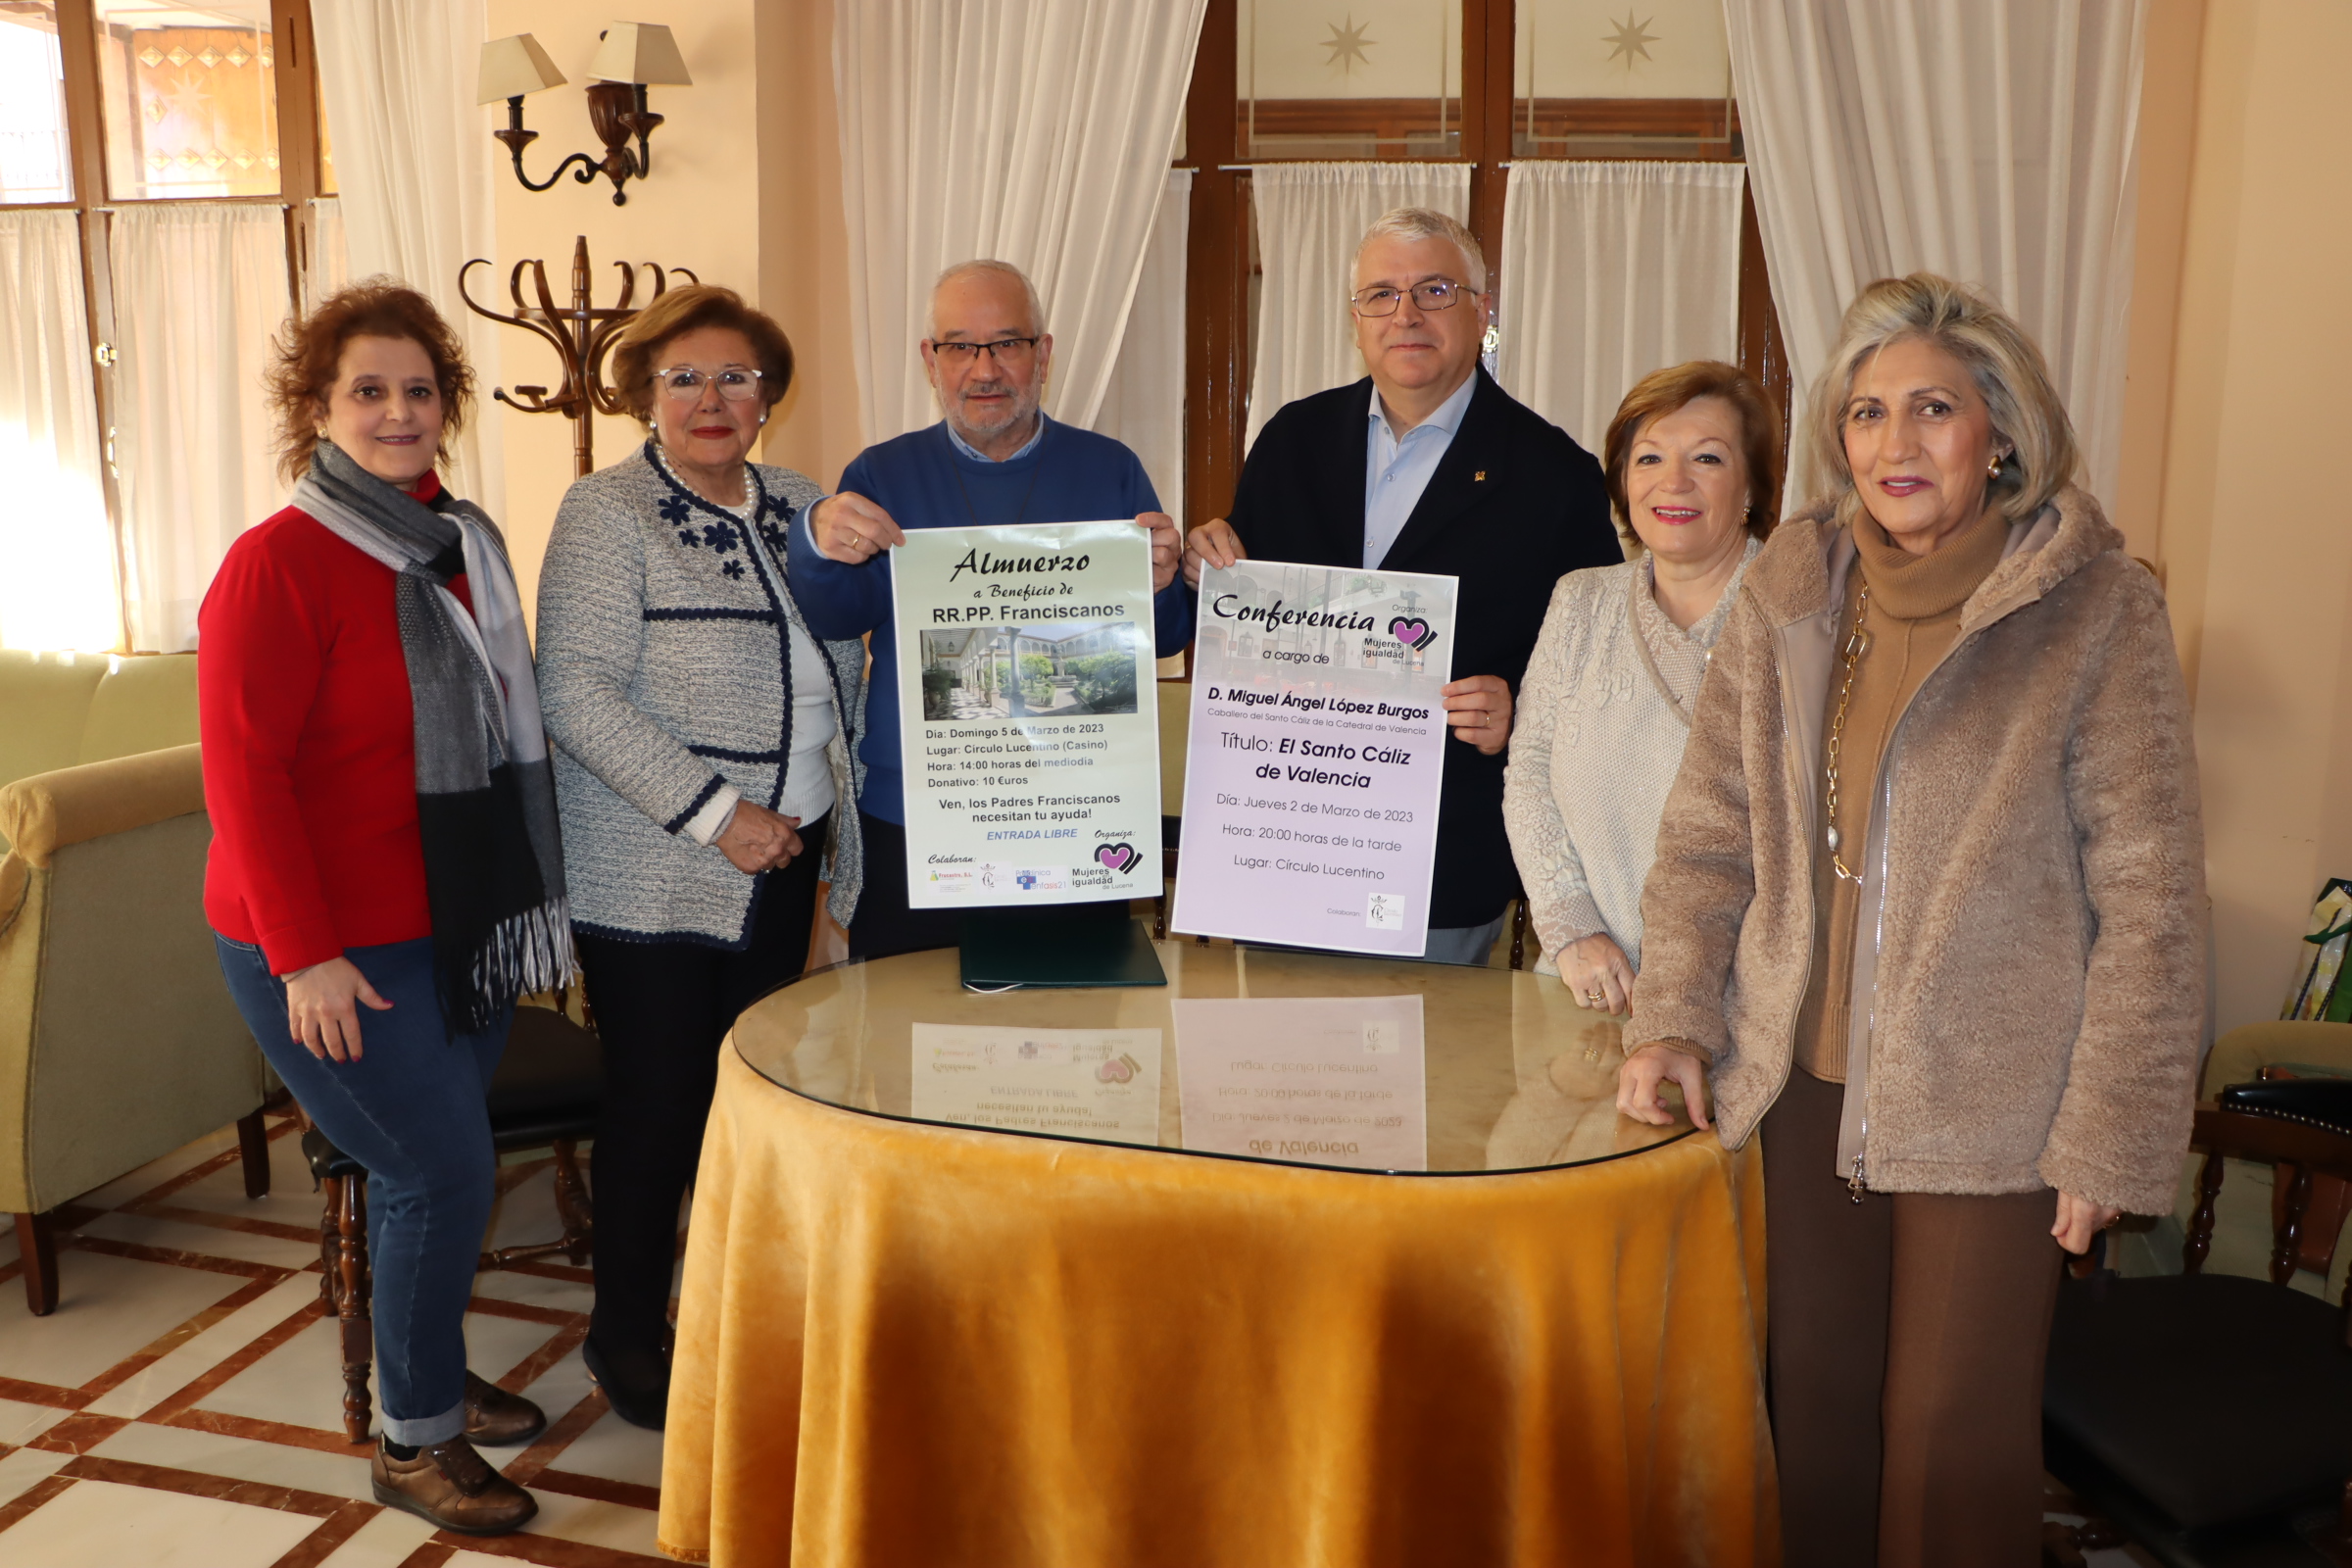 Presentación del almuerzo solidario a beneficio de las obras en el convento de RR.PP. Franciscanos y la conferencia sobre el Santo Cáliz de Valencia